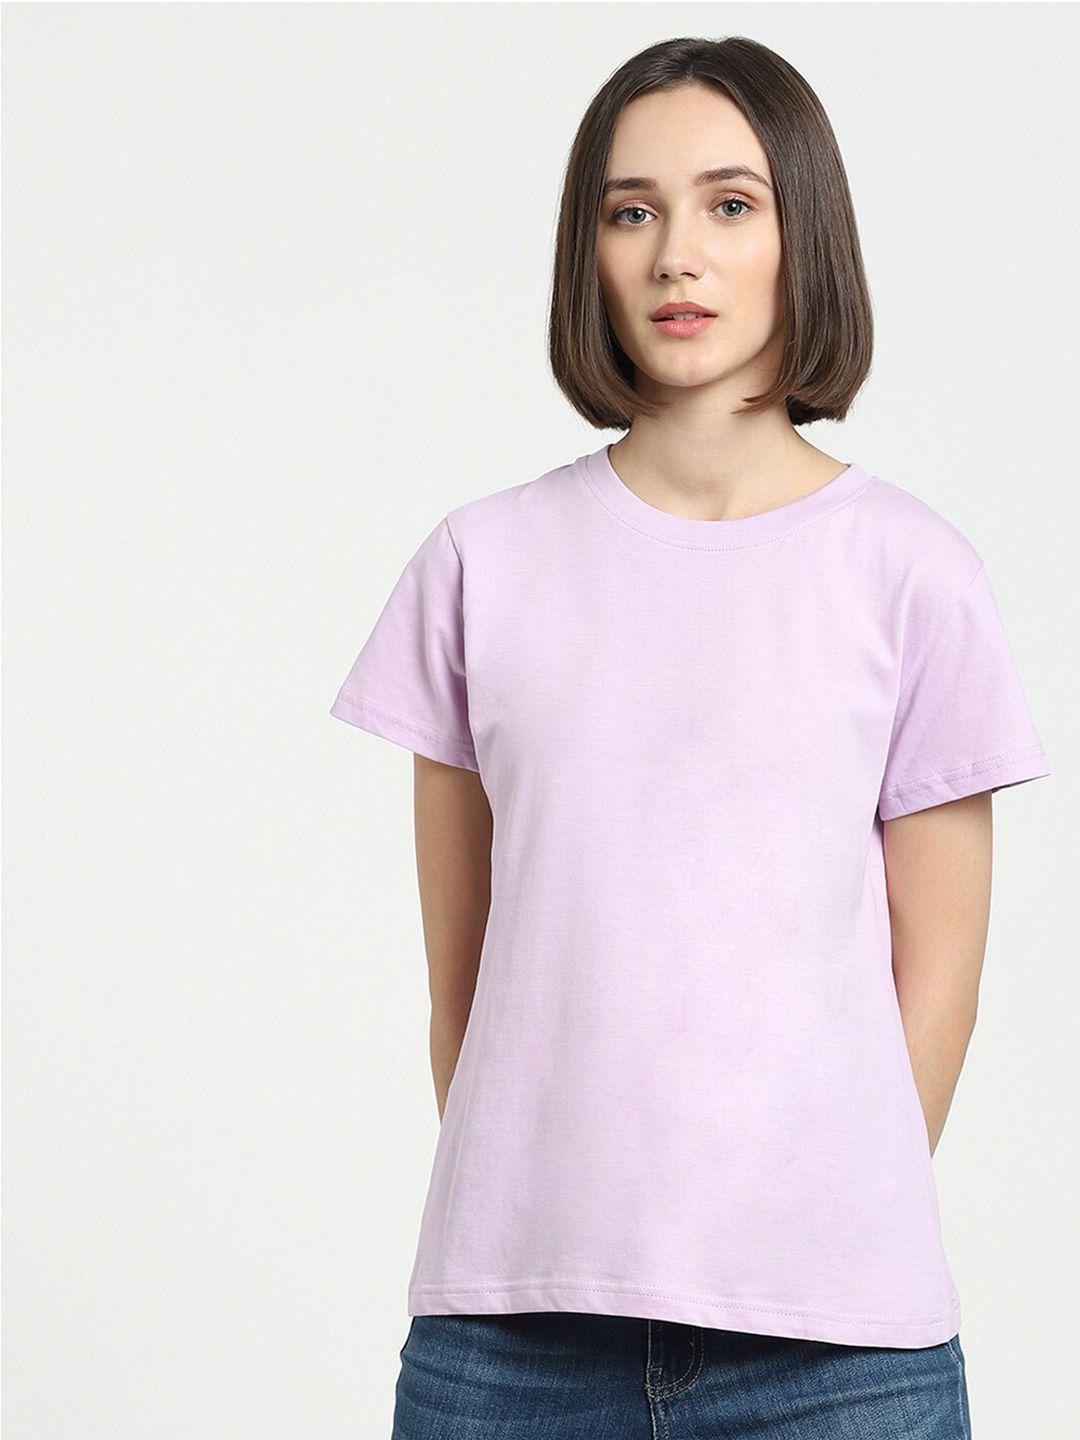 bewakoof women purple t-shirt